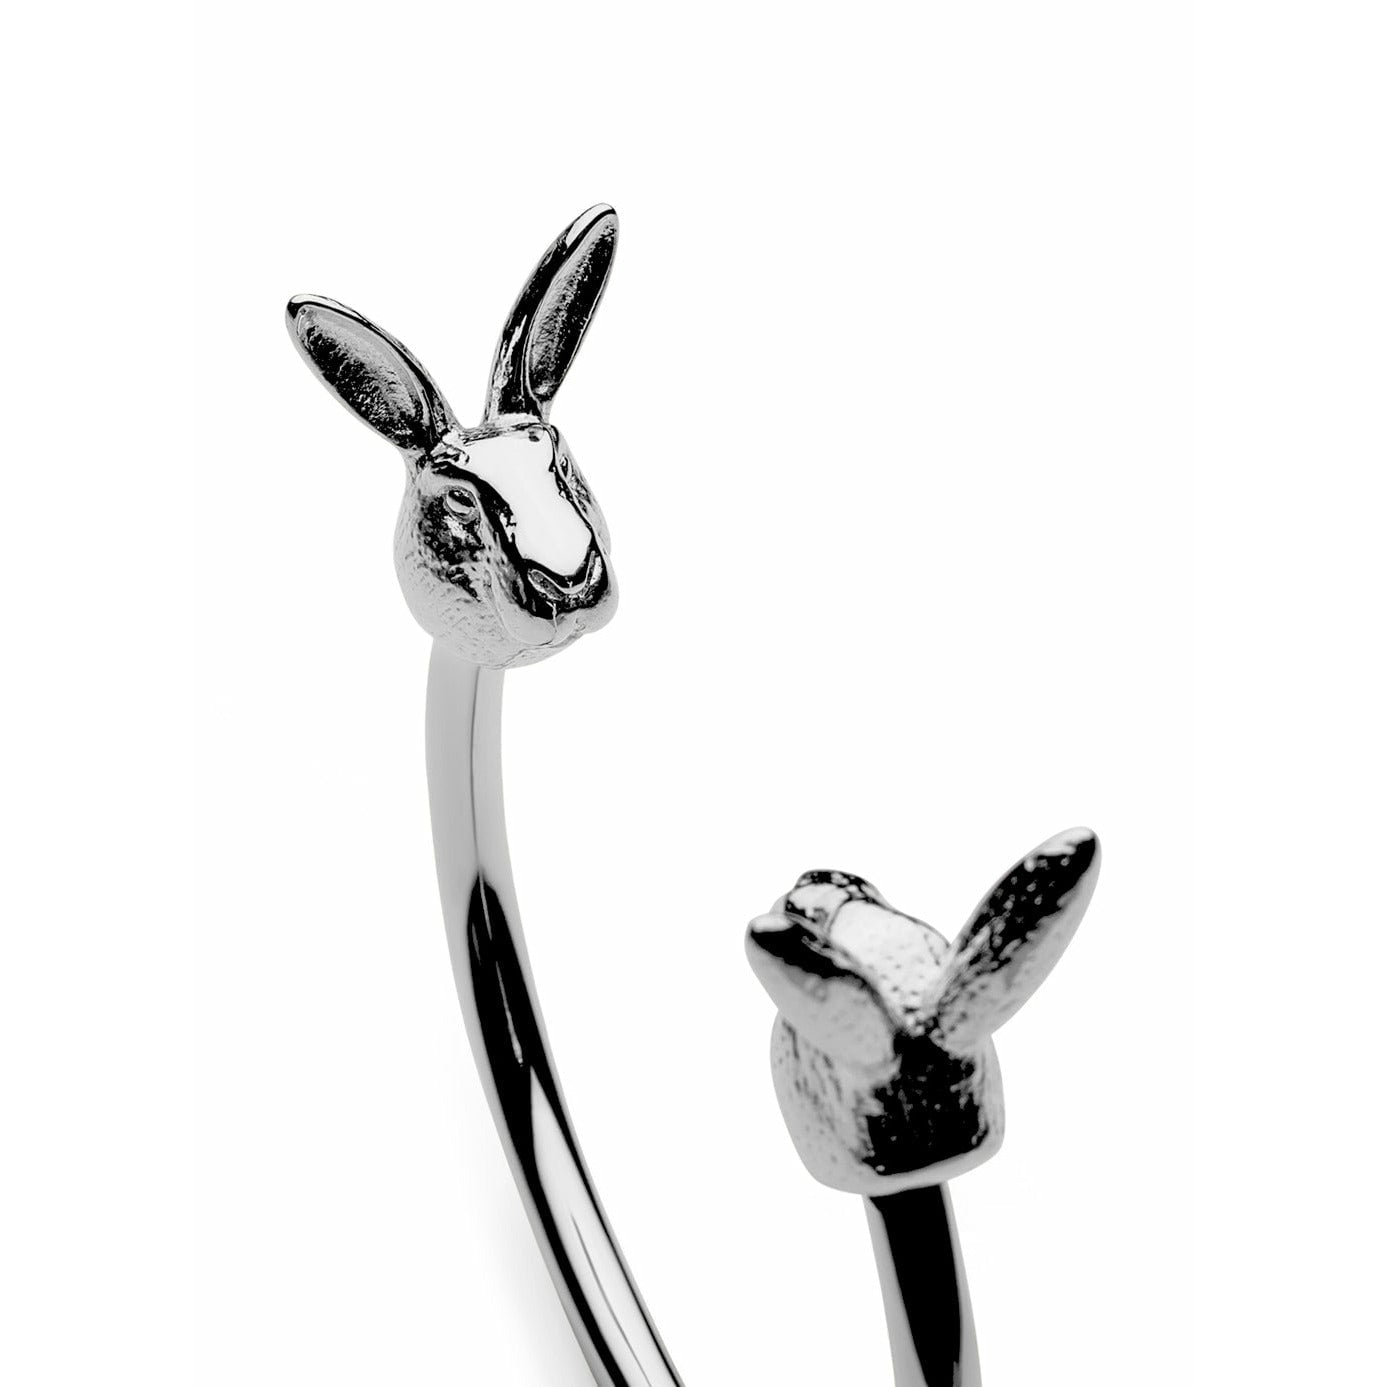 Skultuna Den nordiske dyreliv kanin armbånd lille poleret stål, Ø14,5 cm